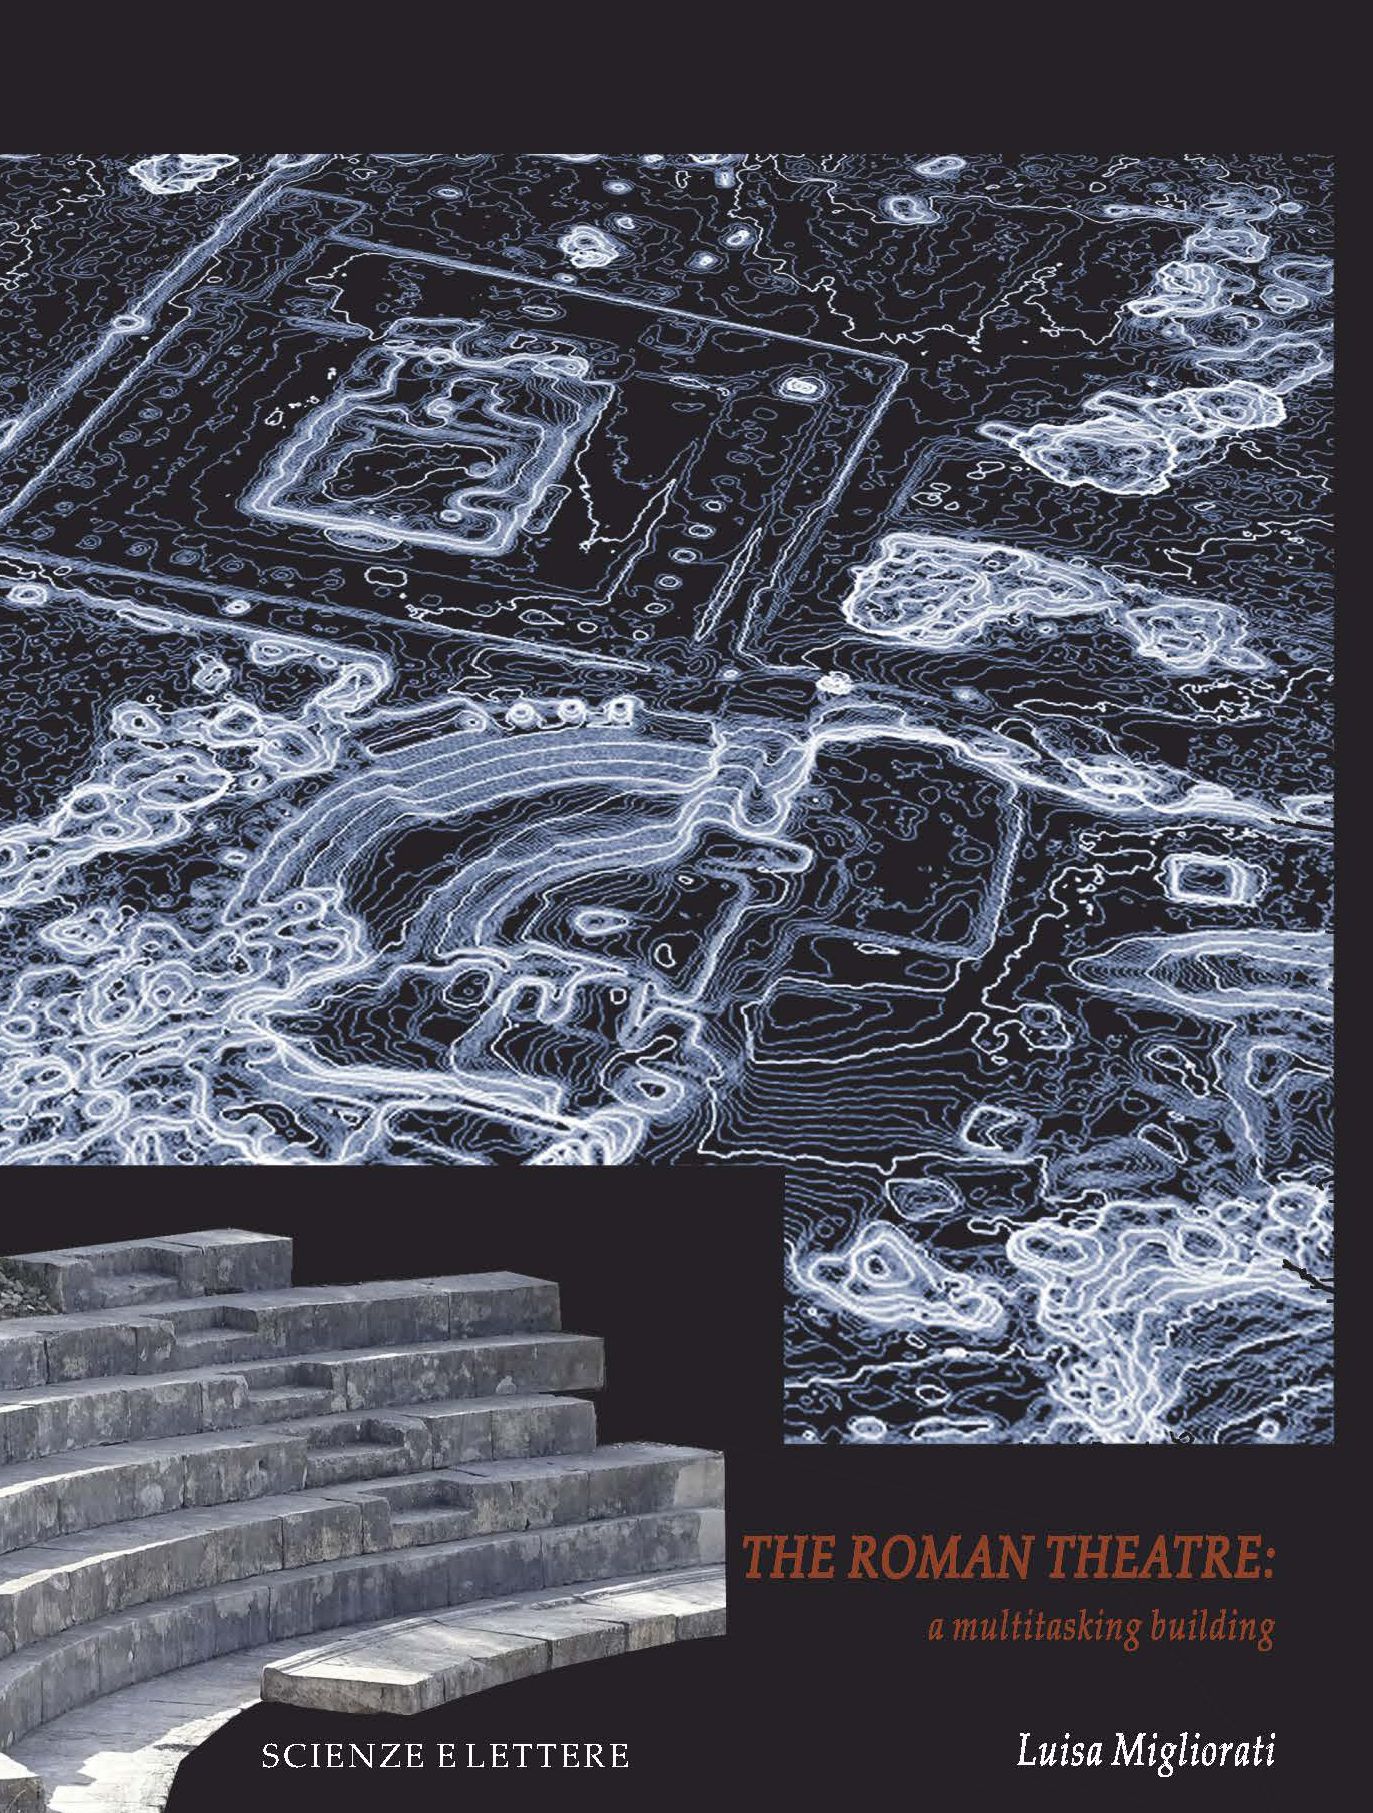 THE ROMAN THEATRE: A MULTITASKING BUILDING - Collezione archeologica 12
